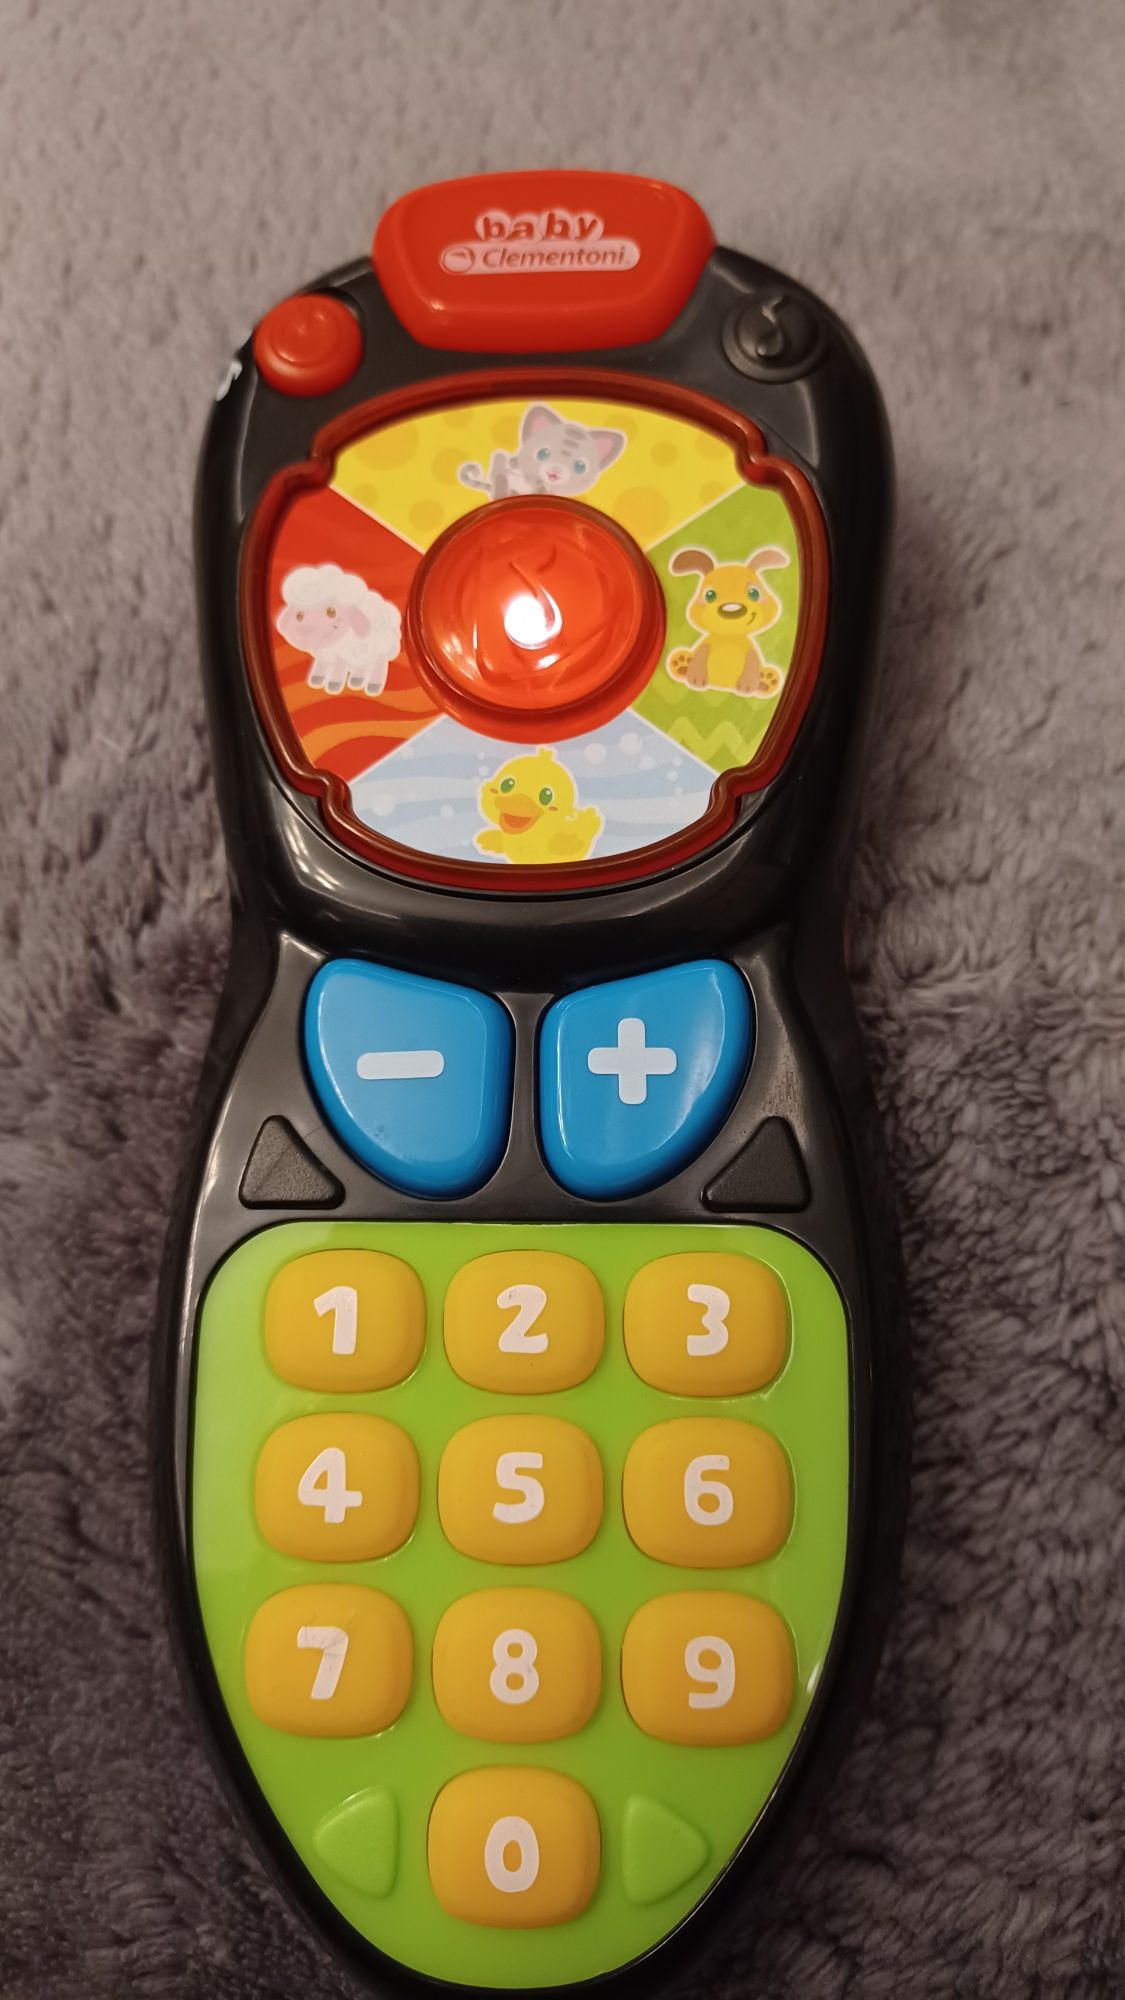 Clementoni Baby Remote Control Toy wielobarwny pilot dla dzieci FR